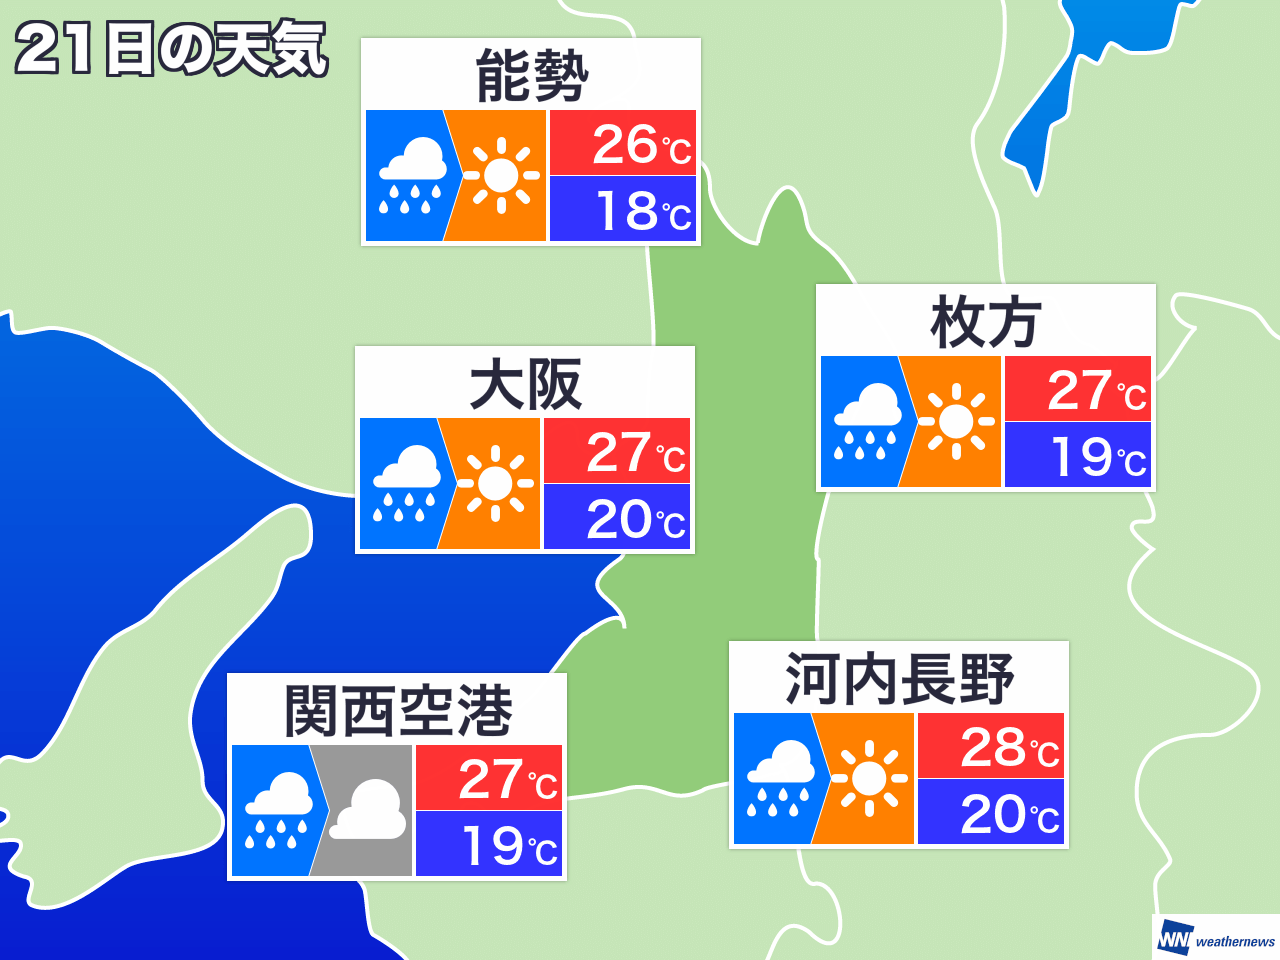 11月13日 水 大阪府の明日の天気 ウェザーニュース